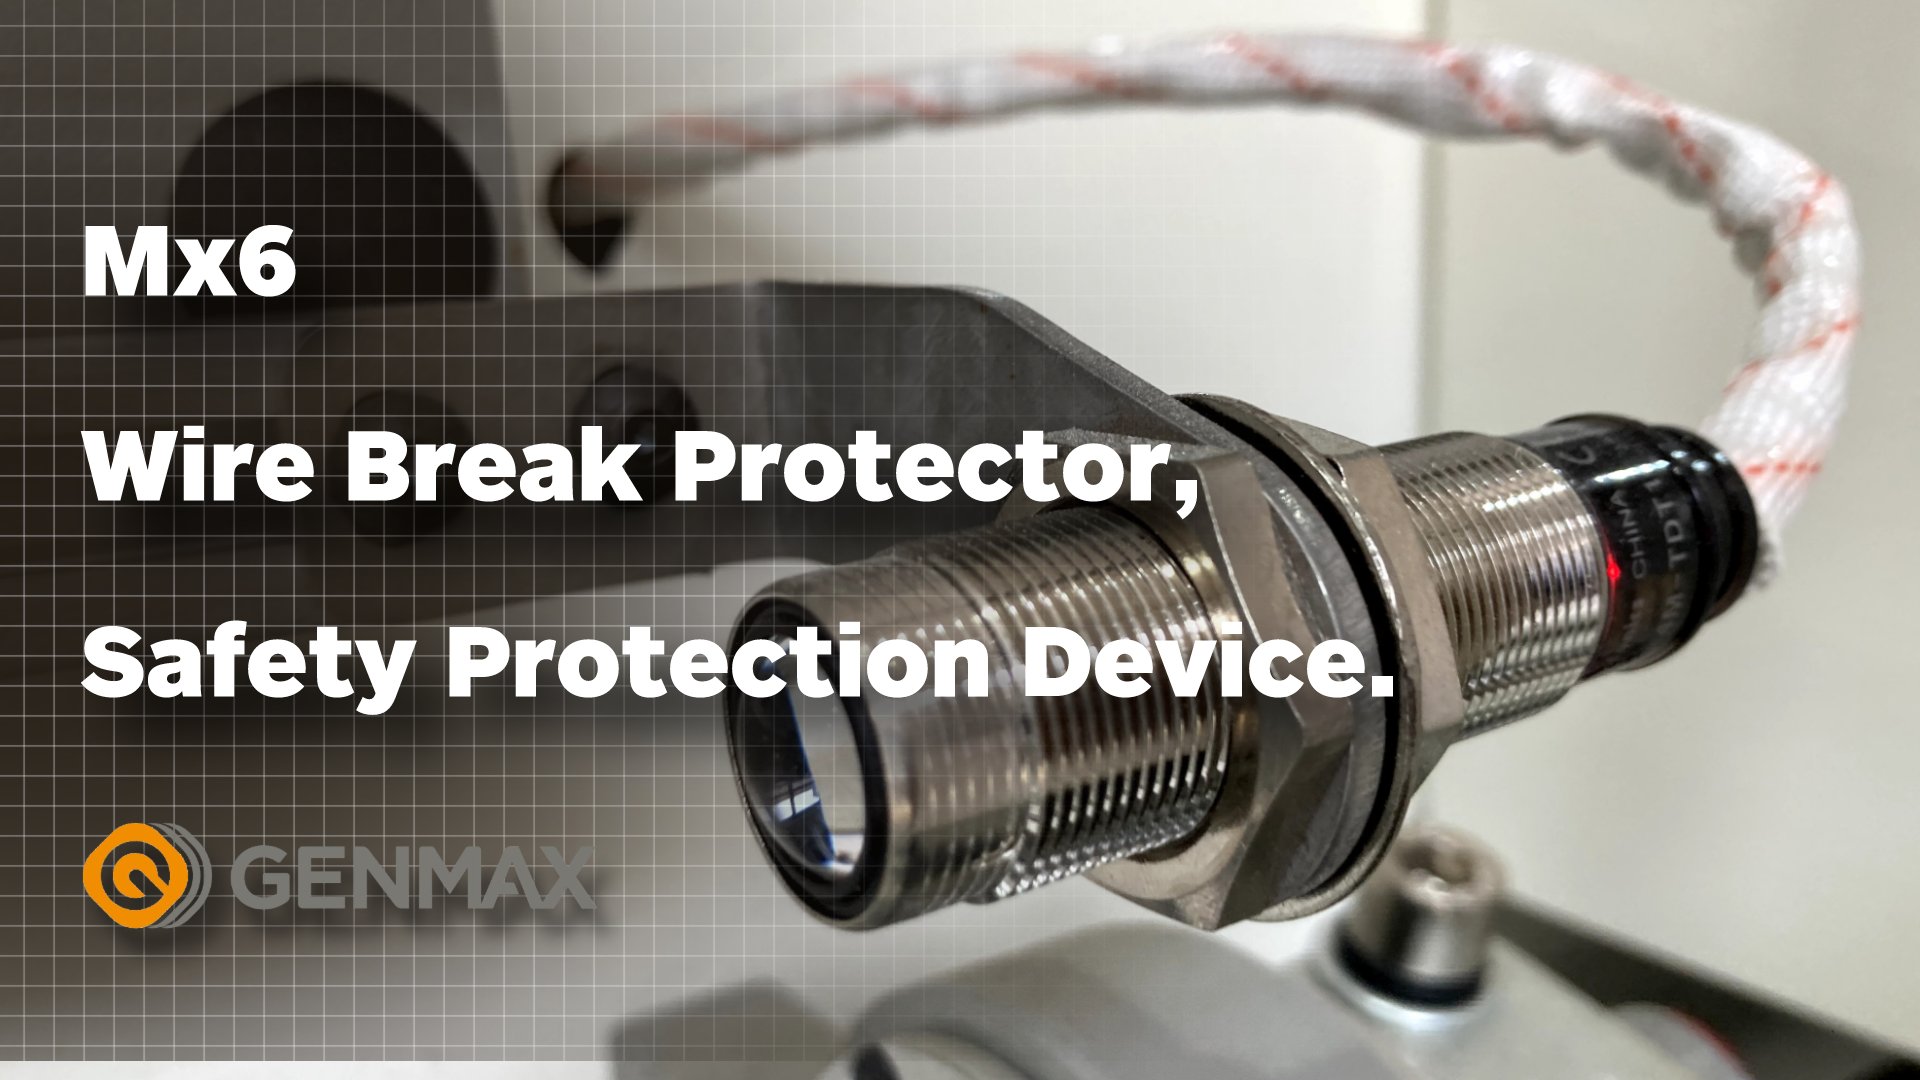 Устройство защиты от обрыва провода MX6, защитное устройство.